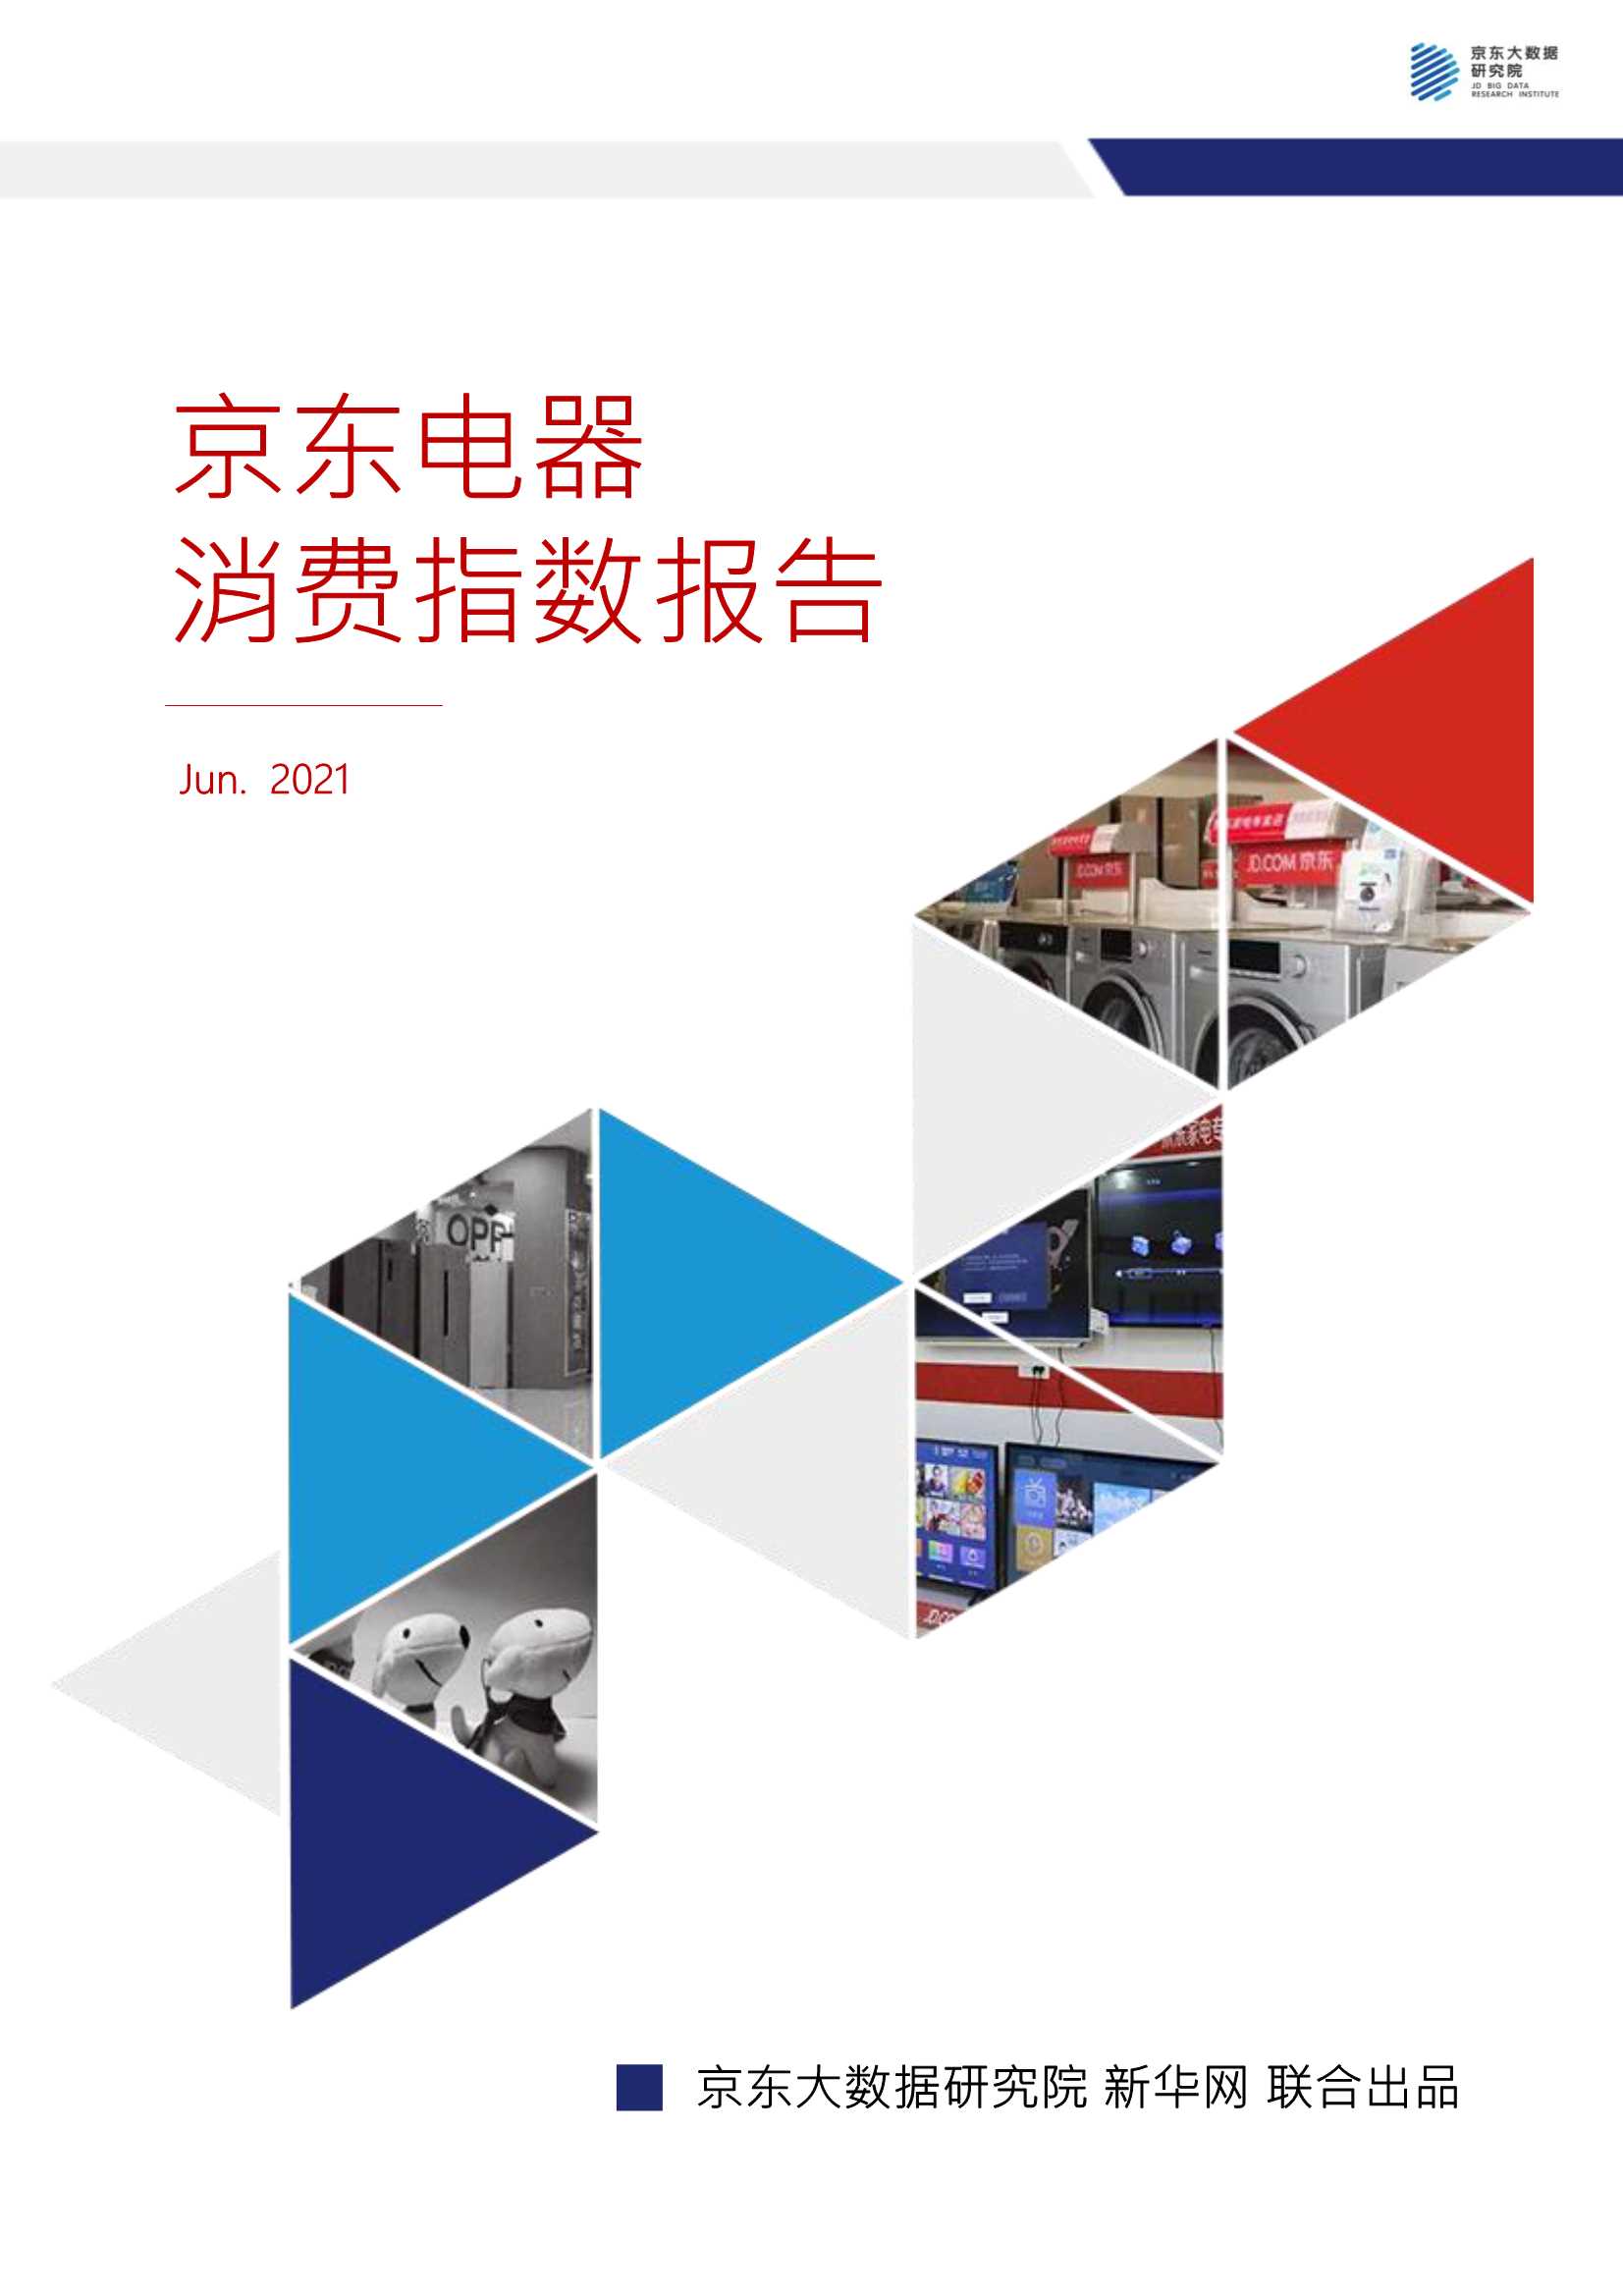 京东-京东电器消费指数报告-2021.06-33页